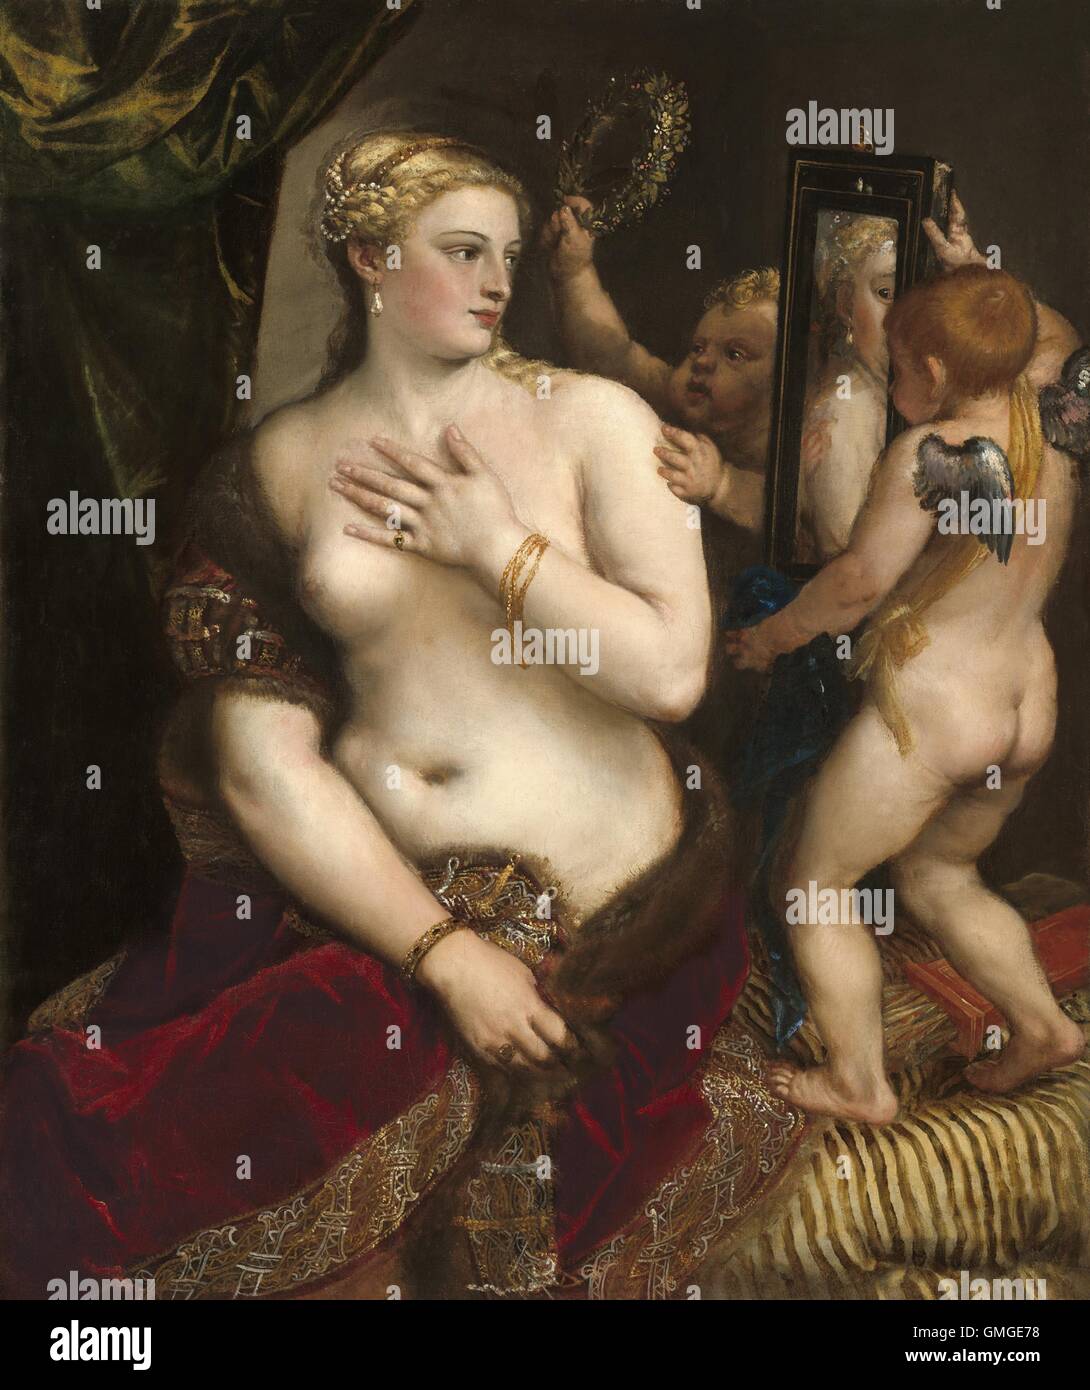 Venere allo specchio di Tiziano, c. 1555, pittura rinascimentale italiana, olio su tela. Il dipinto della classica dea di amore era basata su una statua romana di Venere. Lei si guarda in uno specchio come un amorino raggiunge la adornano con la corona di amore (BSLOC 2016 5 5) Foto Stock